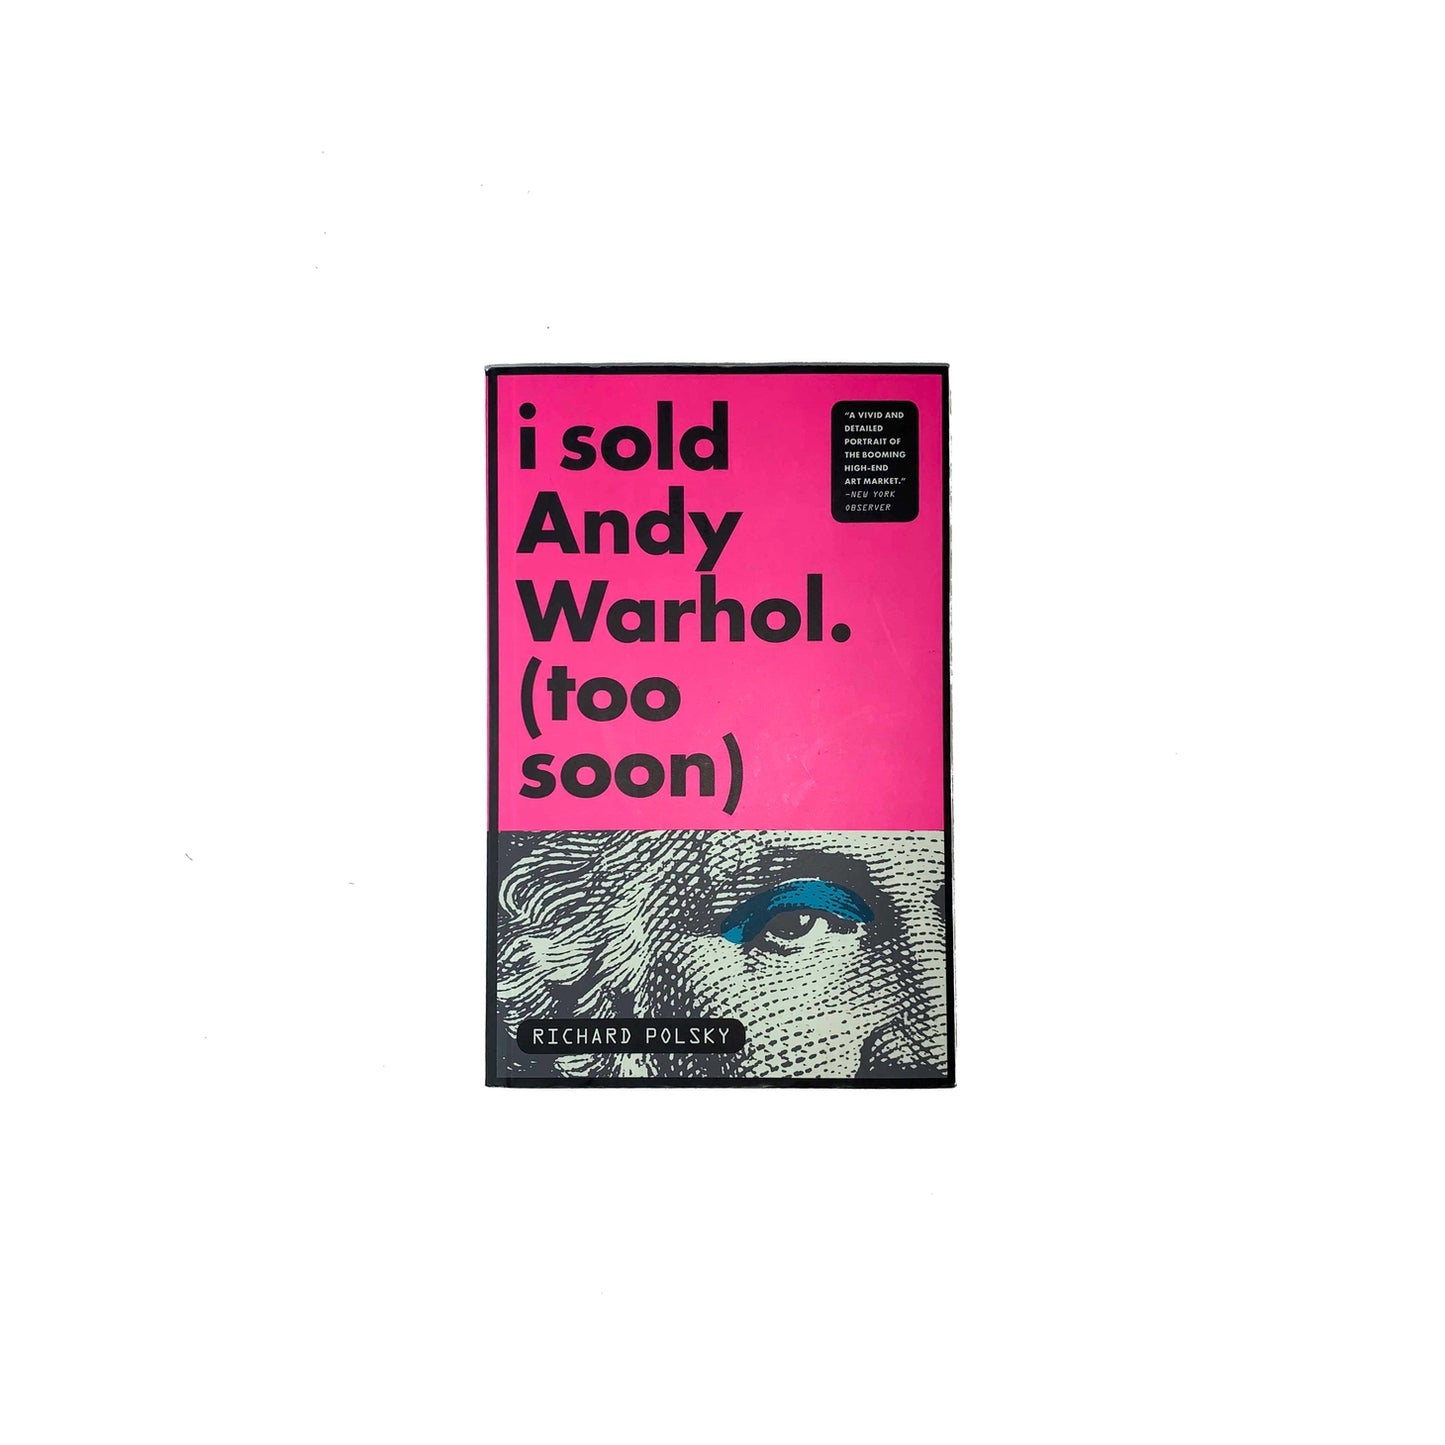 I sold Andy Warhol. (Too Soon) Book